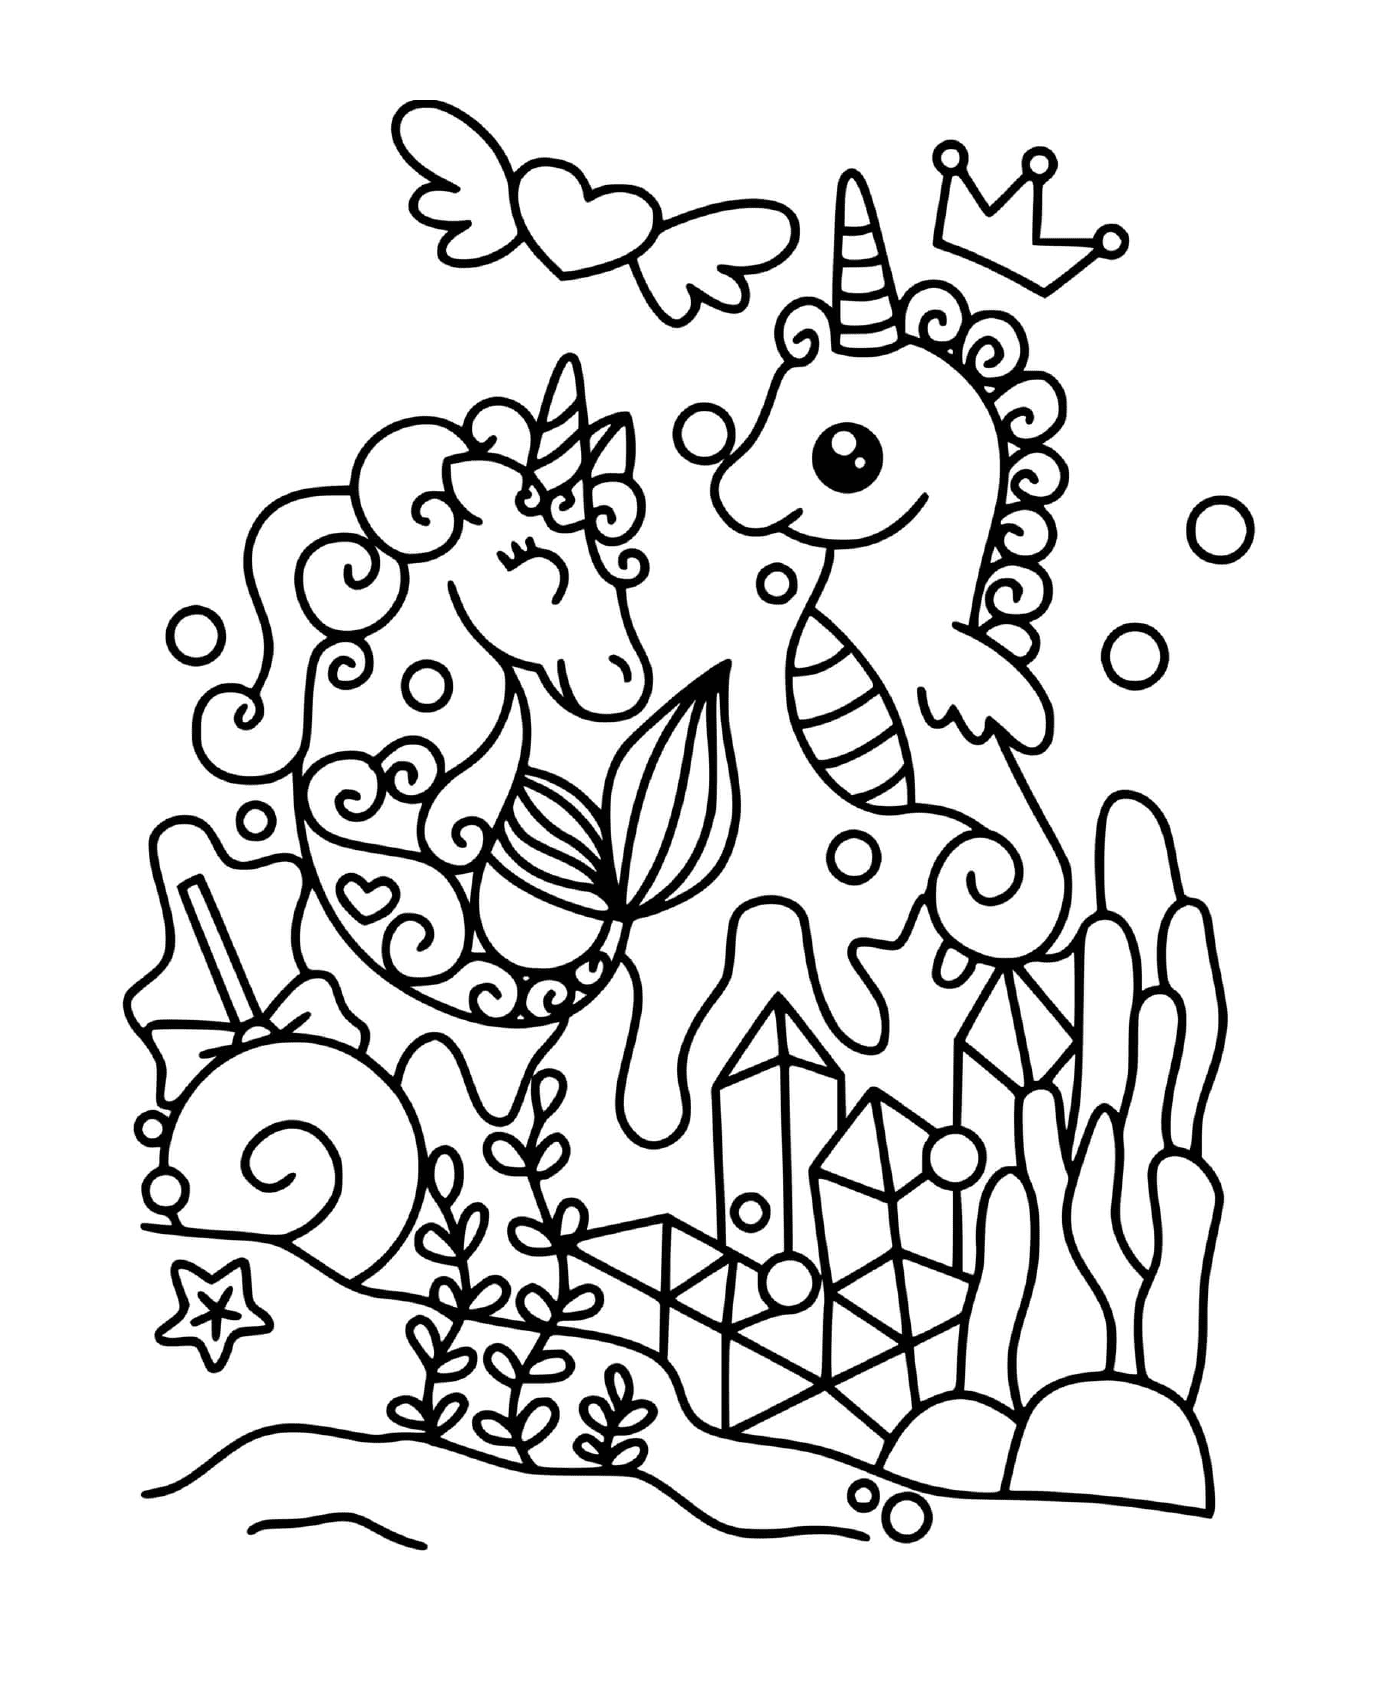  Единорог и волшебная морская лошадь 